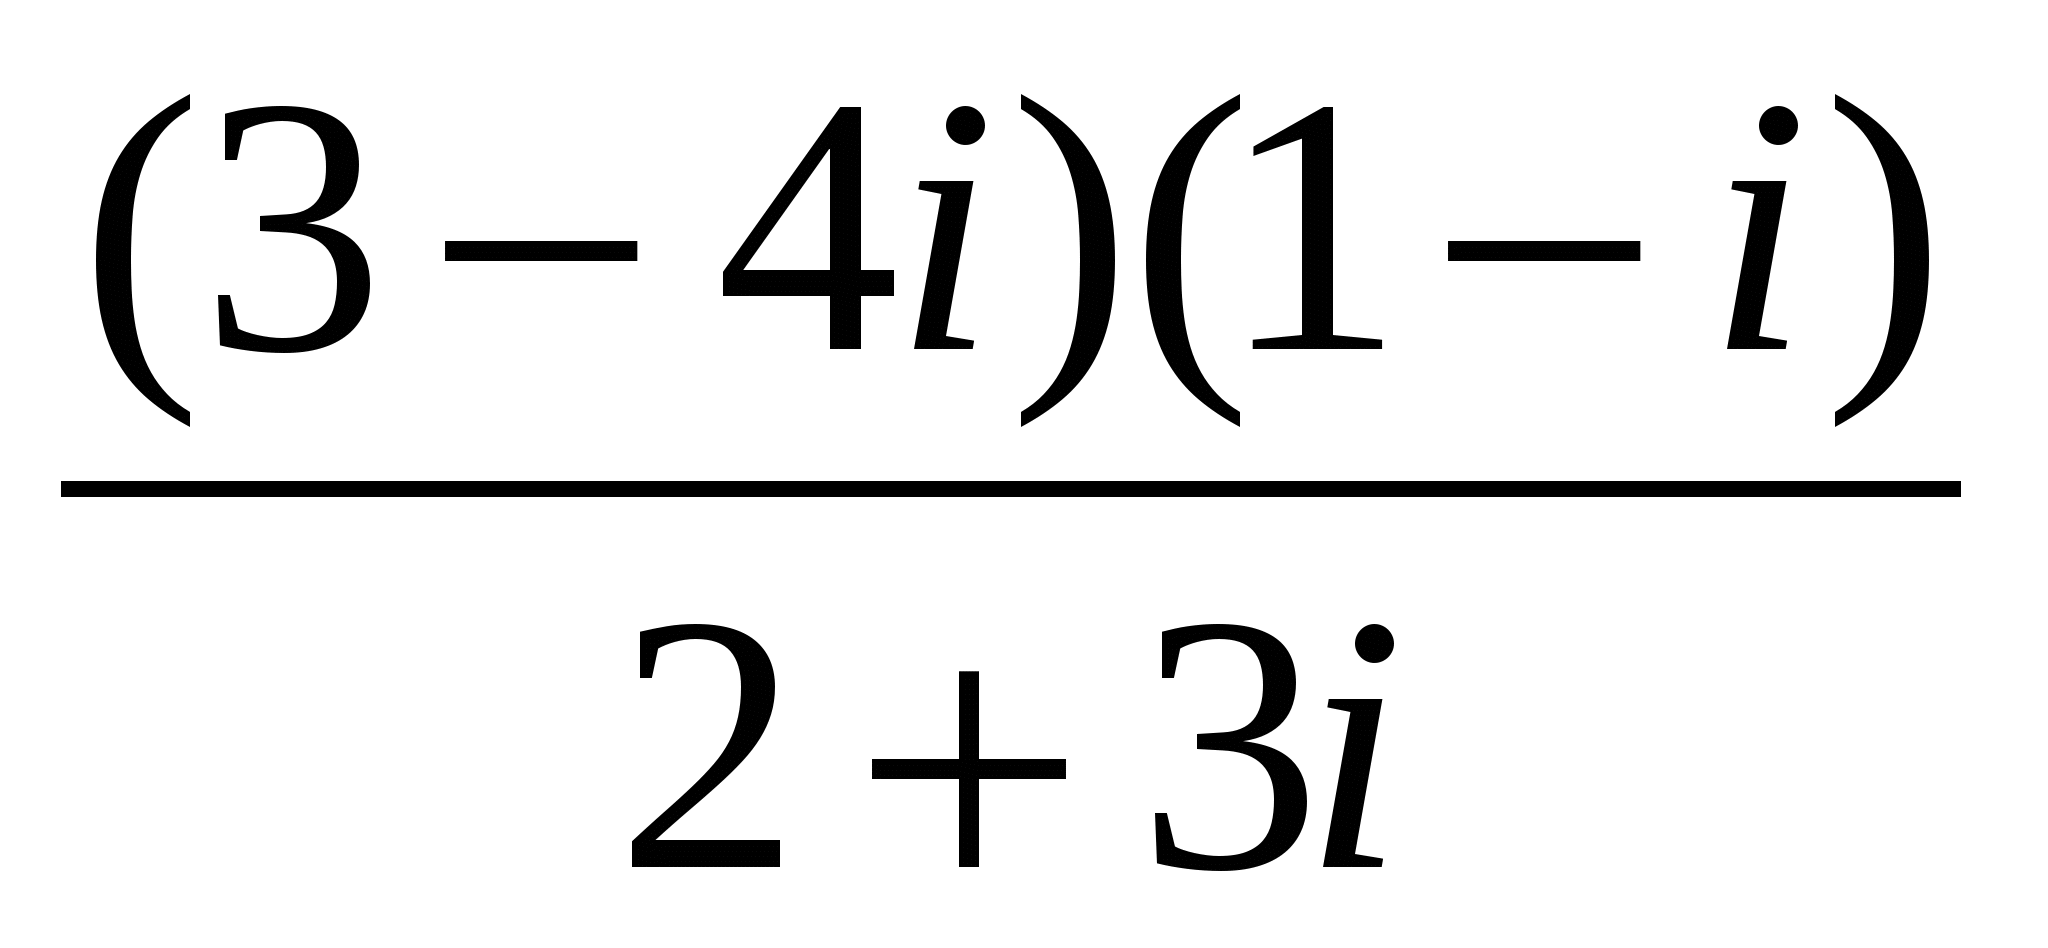 Контрольная работа по алгебре на тему:Комплексные числа